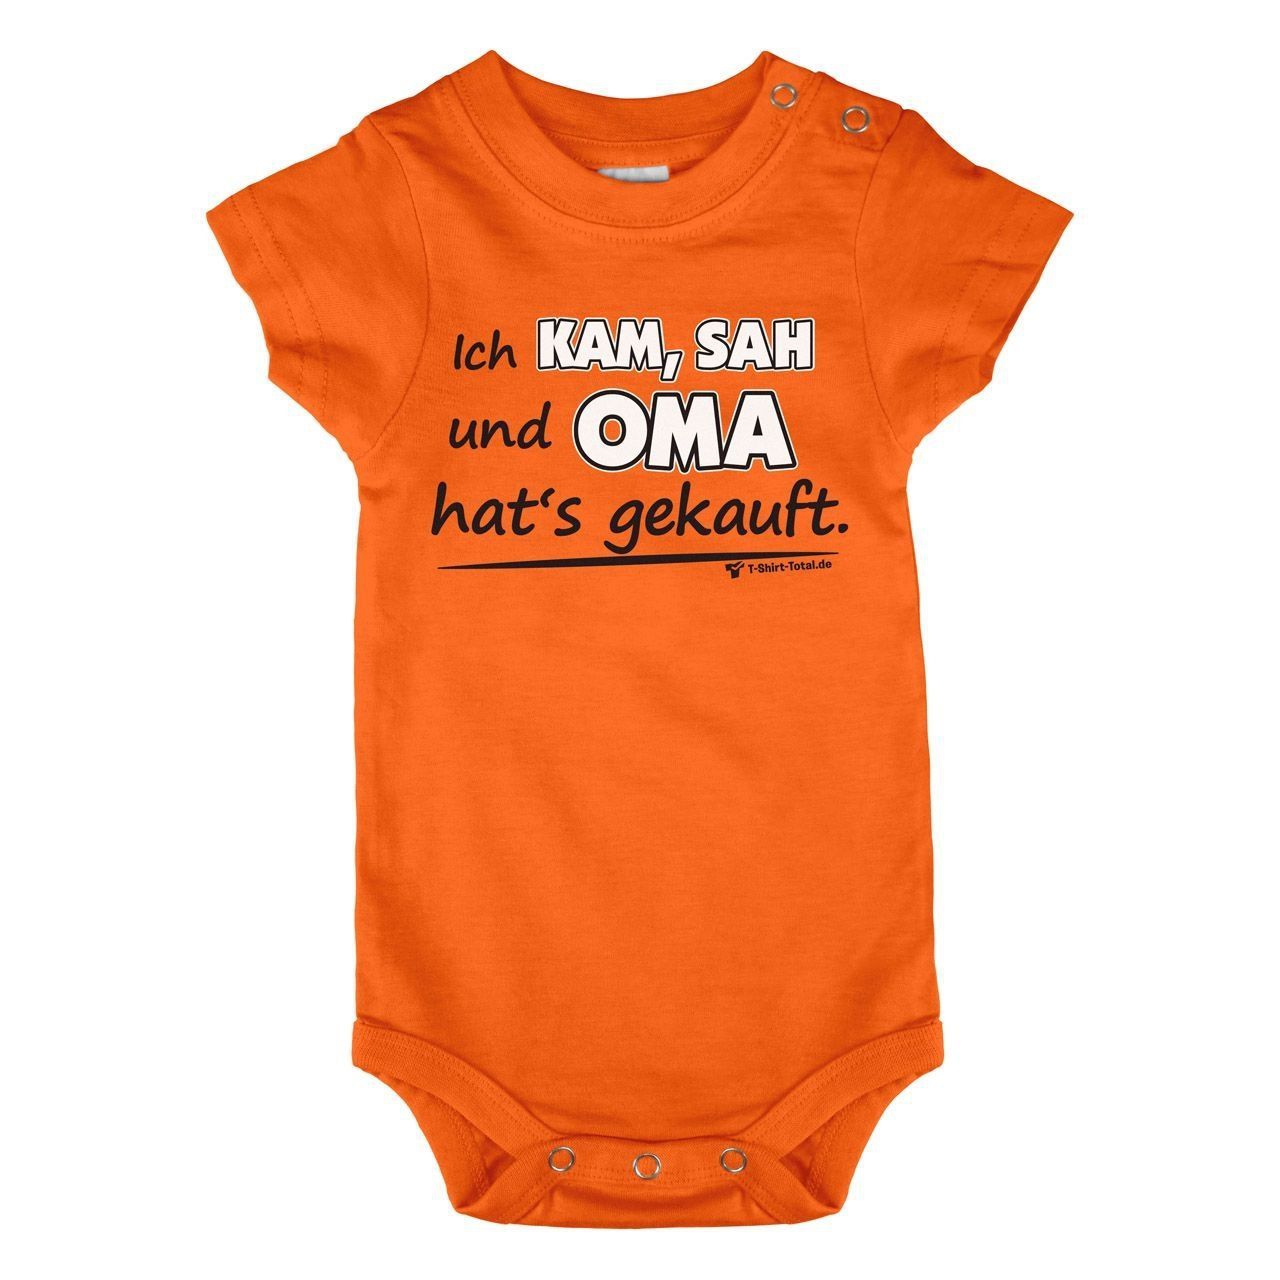 Oma hats gekauft Baby Body Kurzarm orange 56 / 62